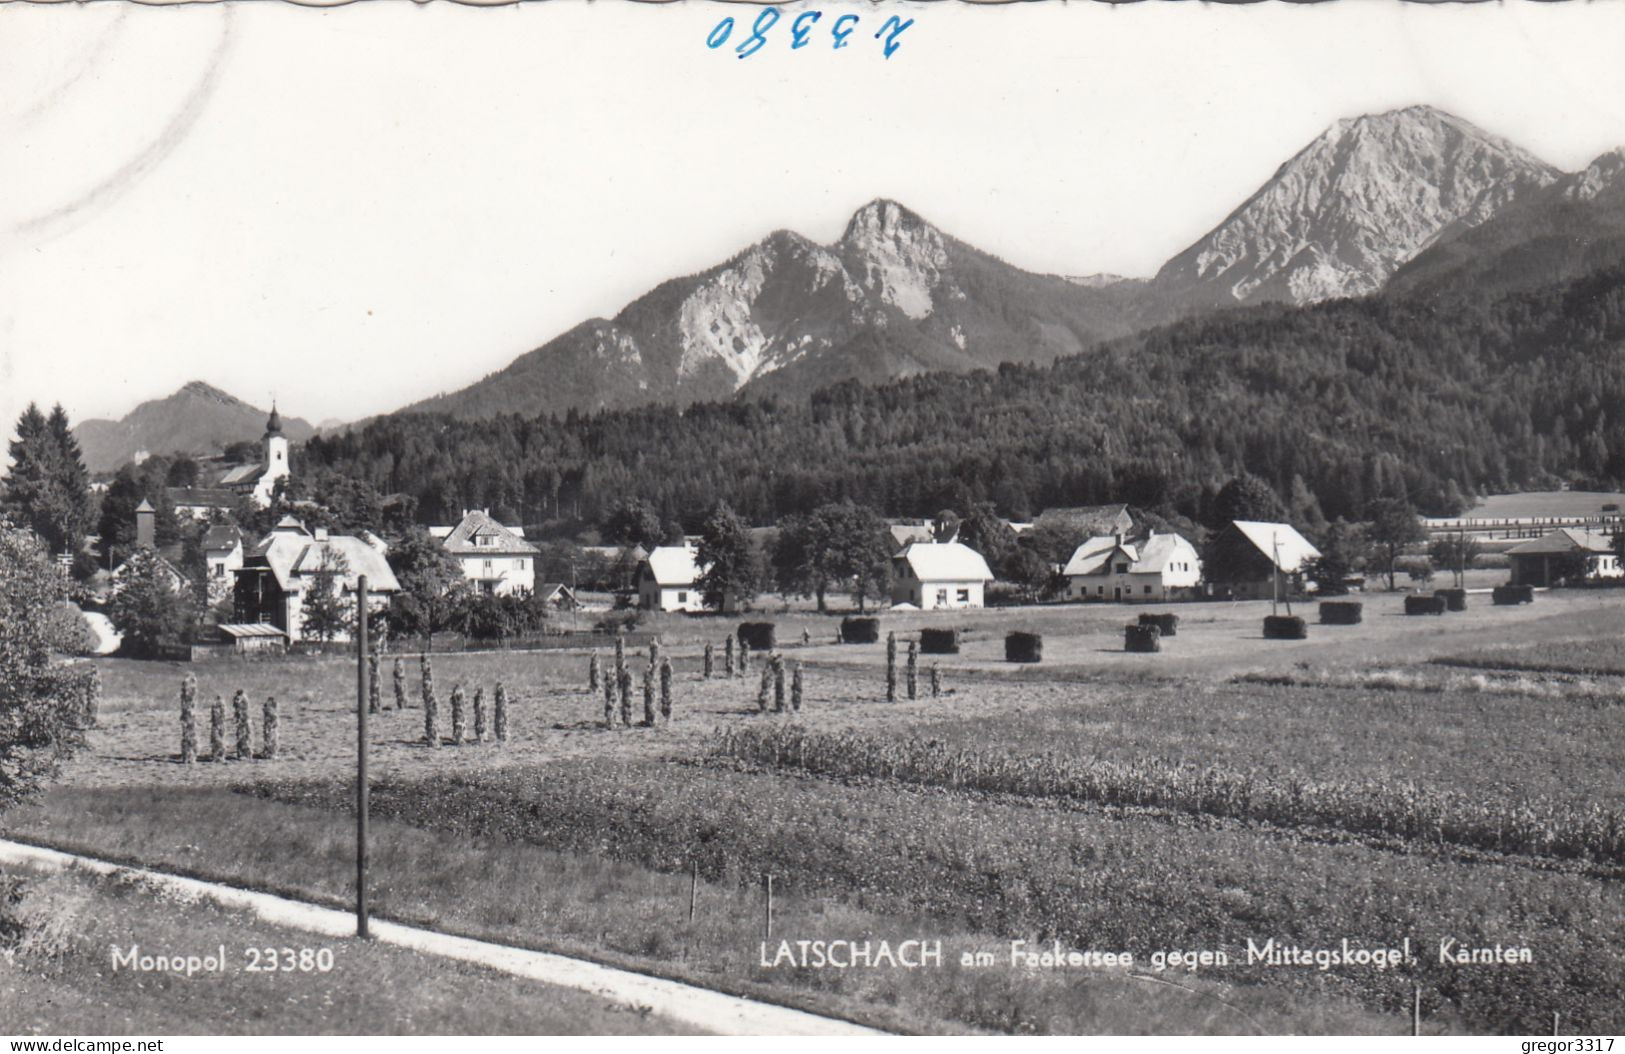 E4338) LATSCHACH Am  FAAKERSEE Kärnten Gegen Mittagskogel - Häuser Felder U. Kirche ALT - Faakersee-Orte